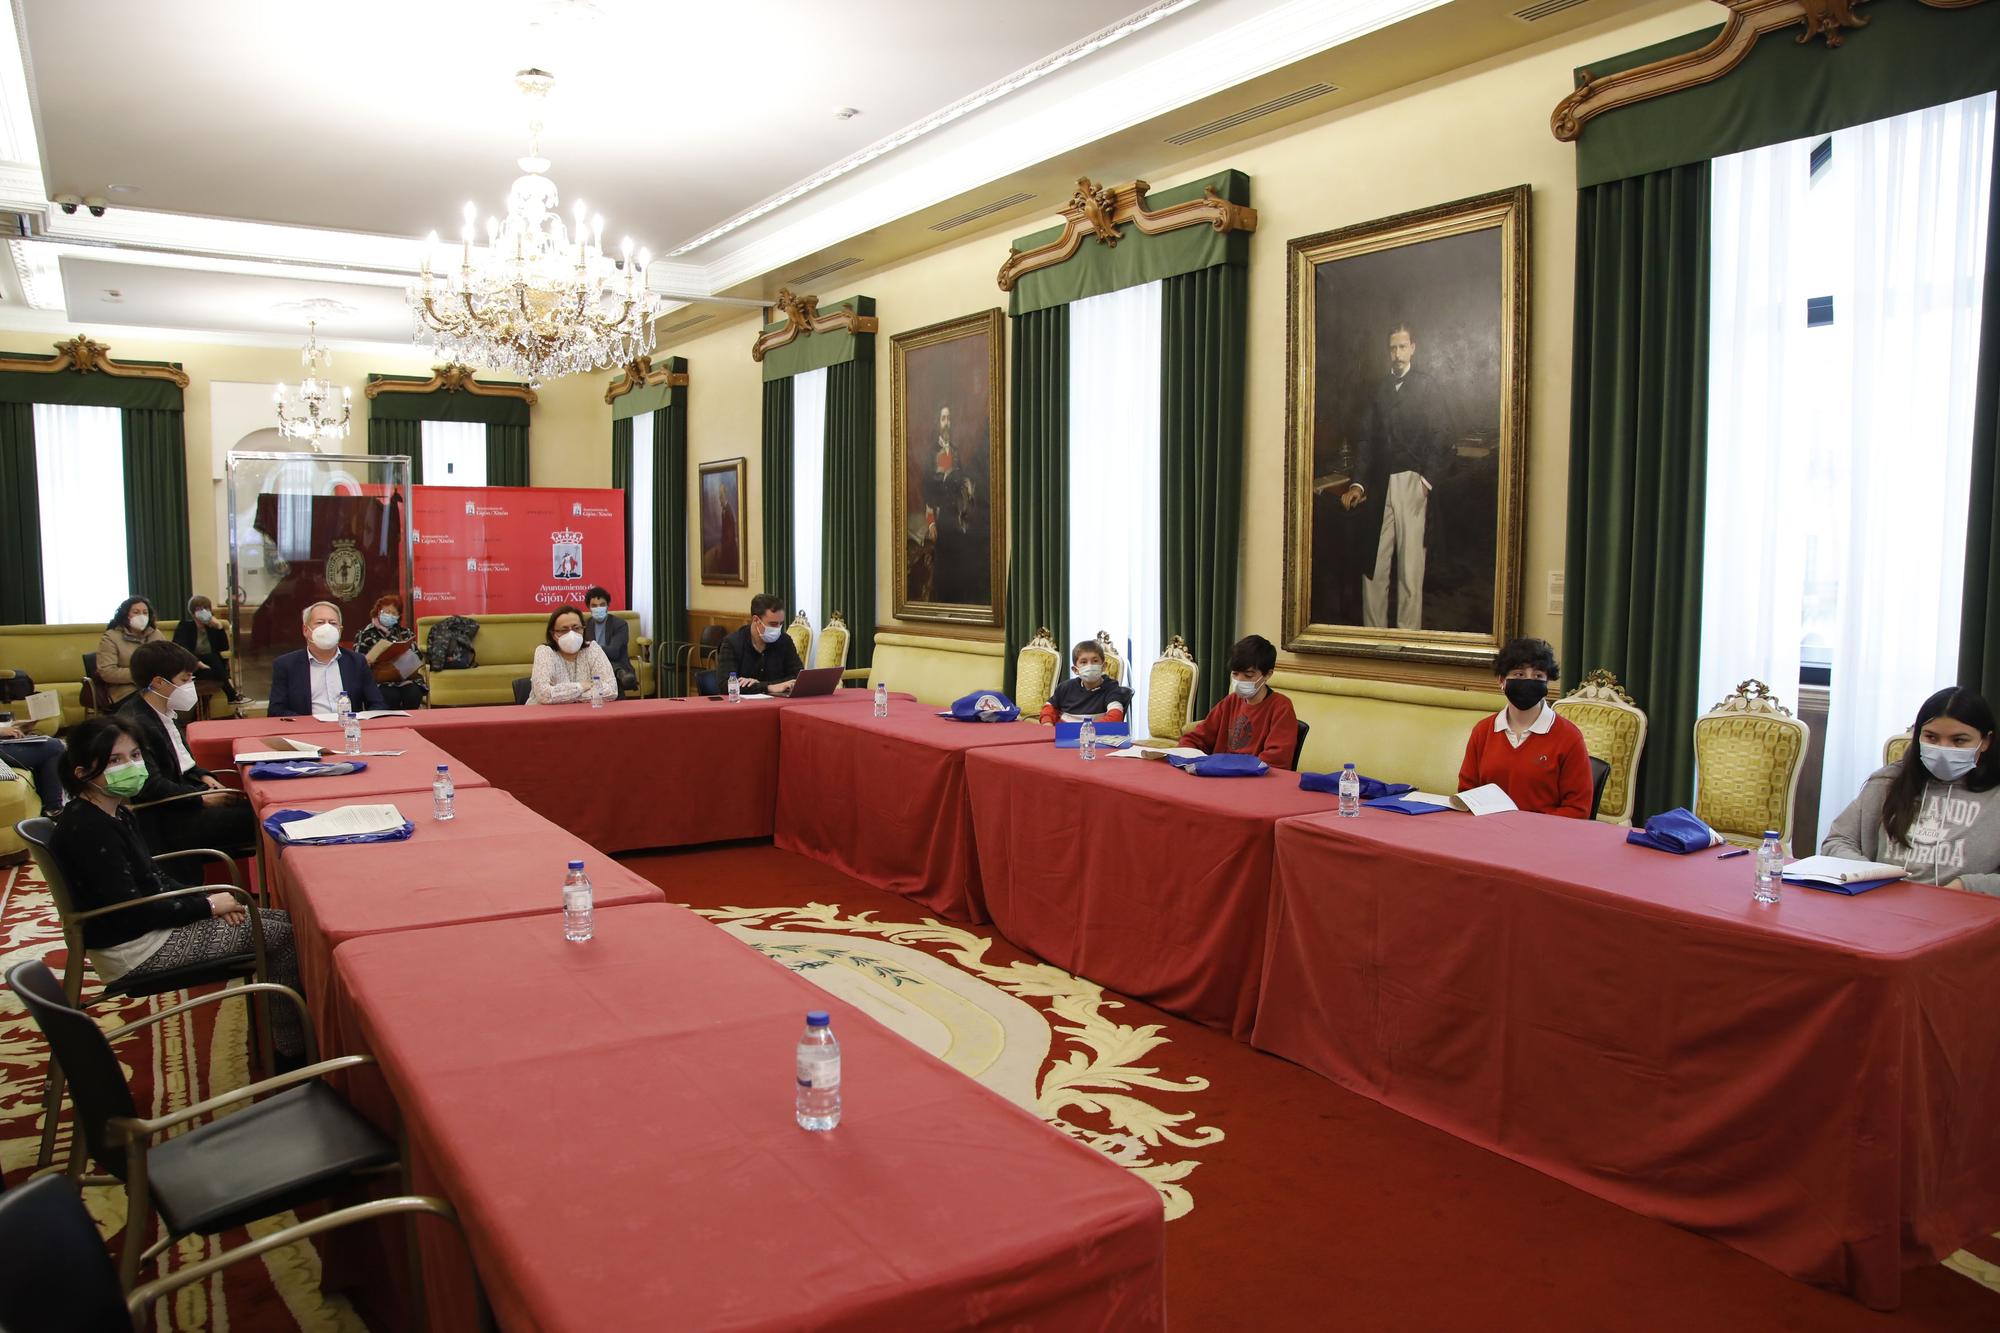 Los niños de Gijón toman el salón de plenos del Ayuntamiento